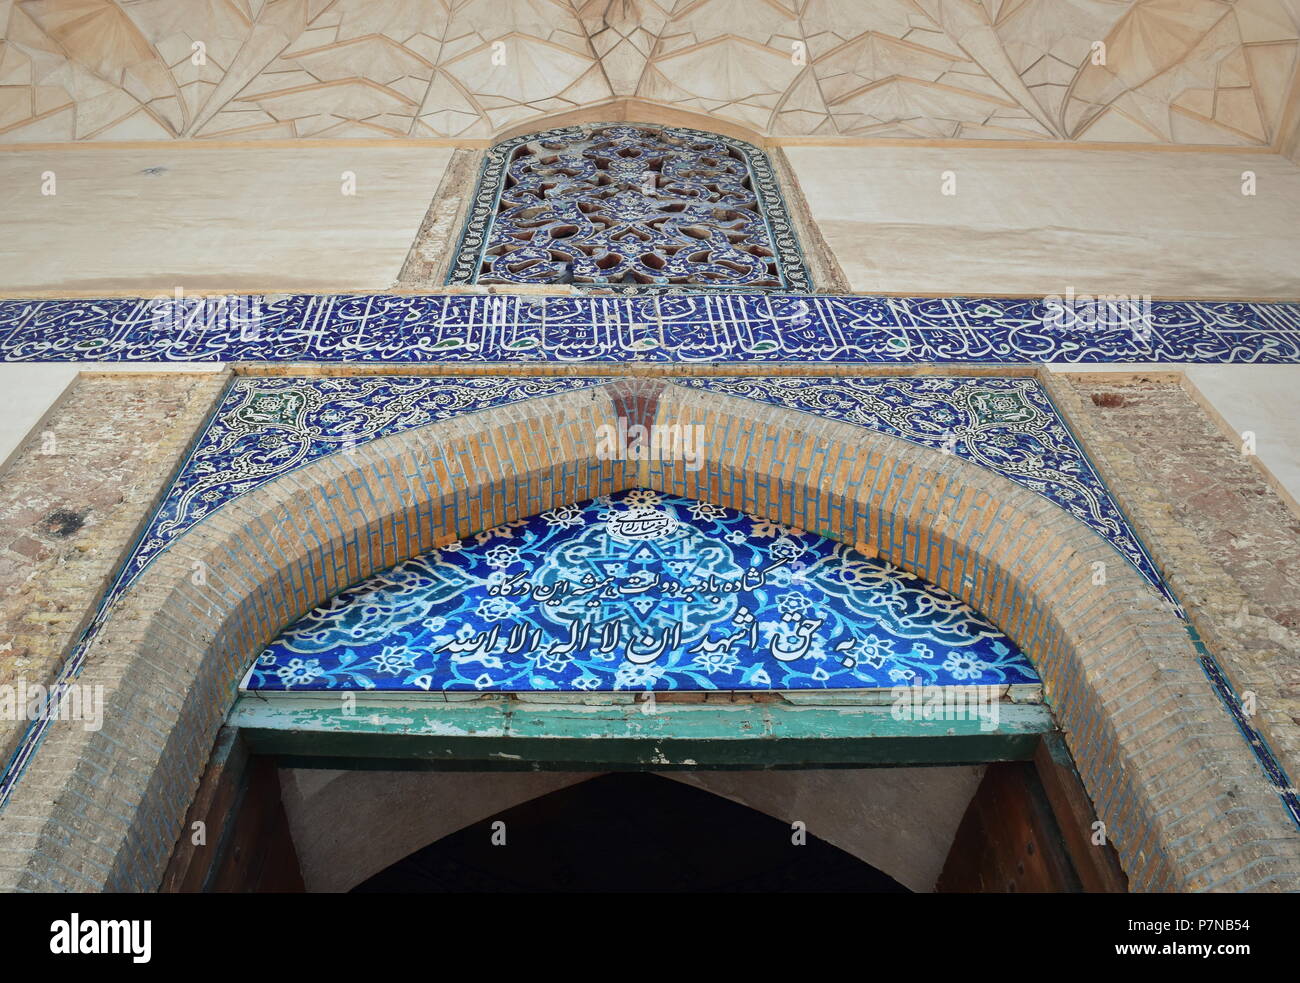 Storica Strada Di seta cancello di ingresso con elementi di iraniano e architettura islamica come bella blu di piastrelle a mosaico floreale Foto Stock